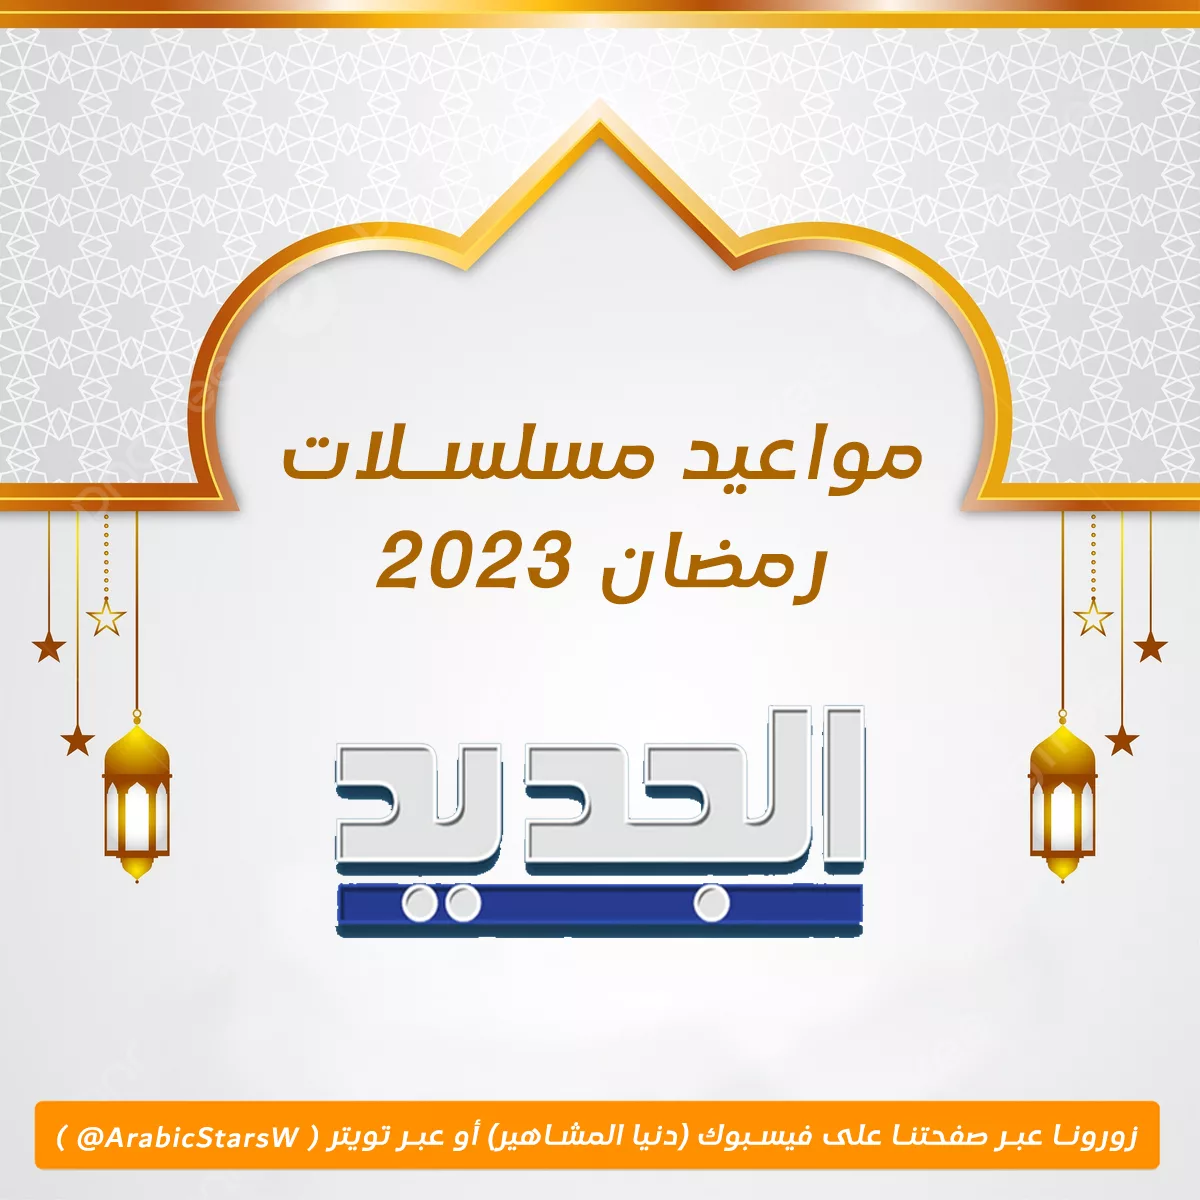 مواعيد مسلسلات قناة الجديد في رمضان 2023